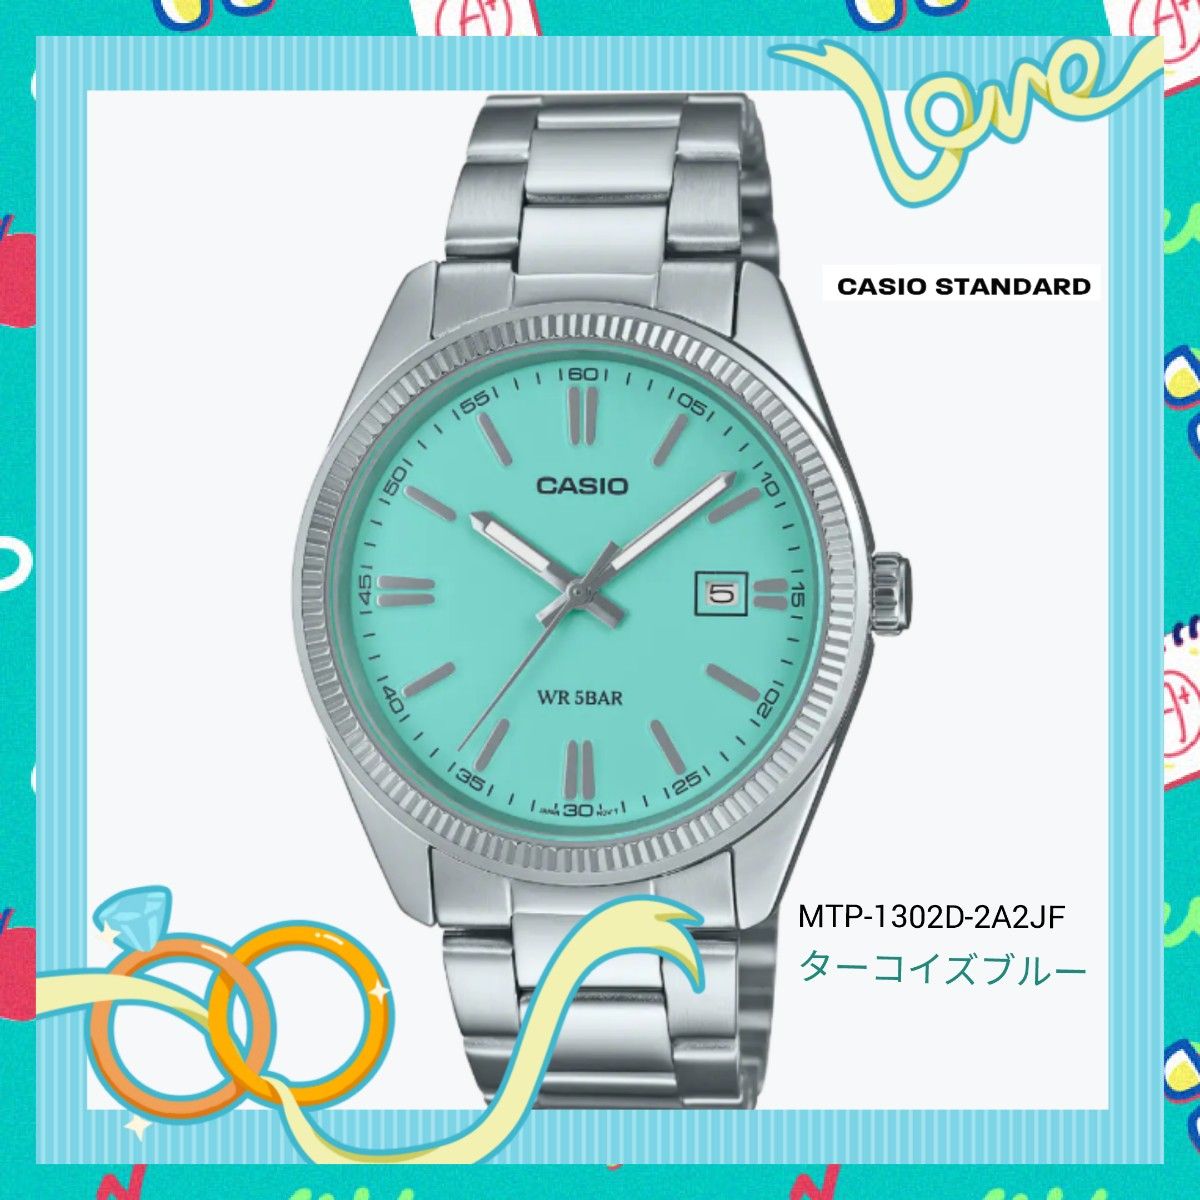 カシオ腕時計 カシオコレクションMTP-1302D-2A2JF ターコイズブルー